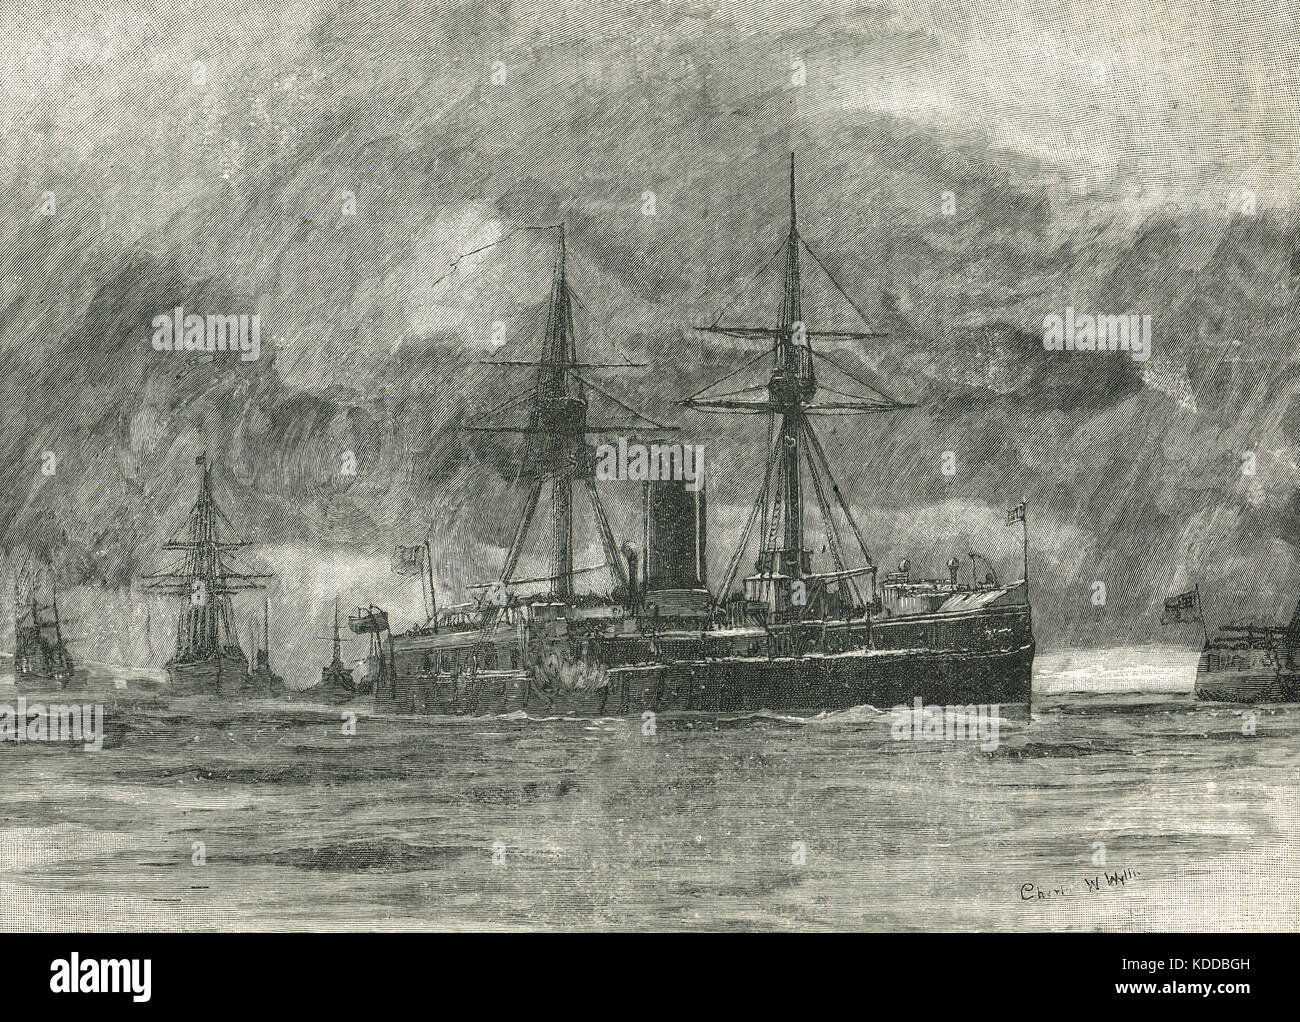 Flotte britannique dans les Dardanelles. L'escadron méditerranéen traverse les détroits des Dardanelles le 14 février 1878. Démonstration de force ordonnée par Disraeli, pendant la guerre russo-turque de 1877 à 1878 Banque D'Images